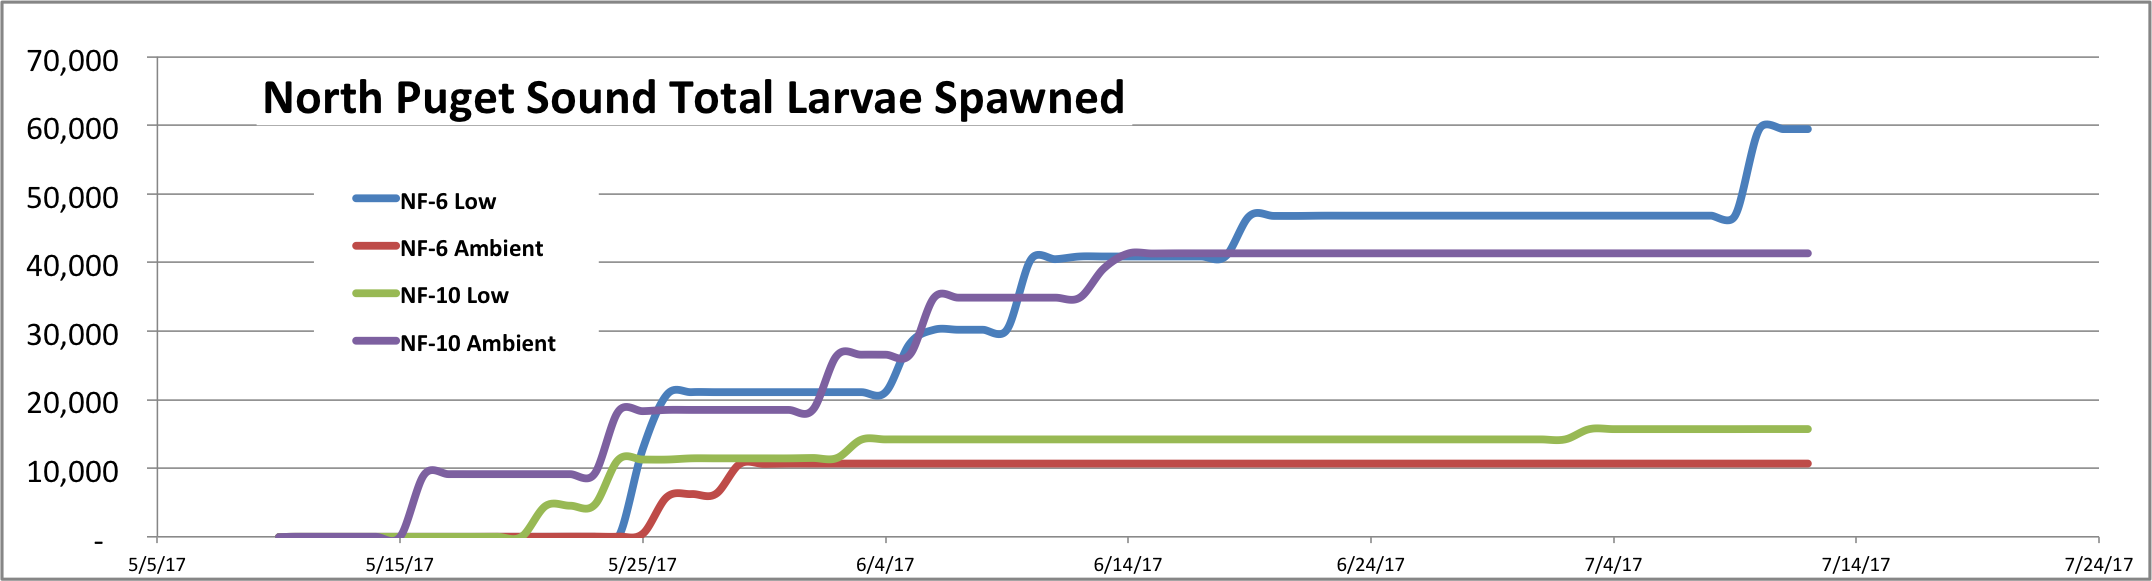 Fidalgo Bay Normalized spawning chart